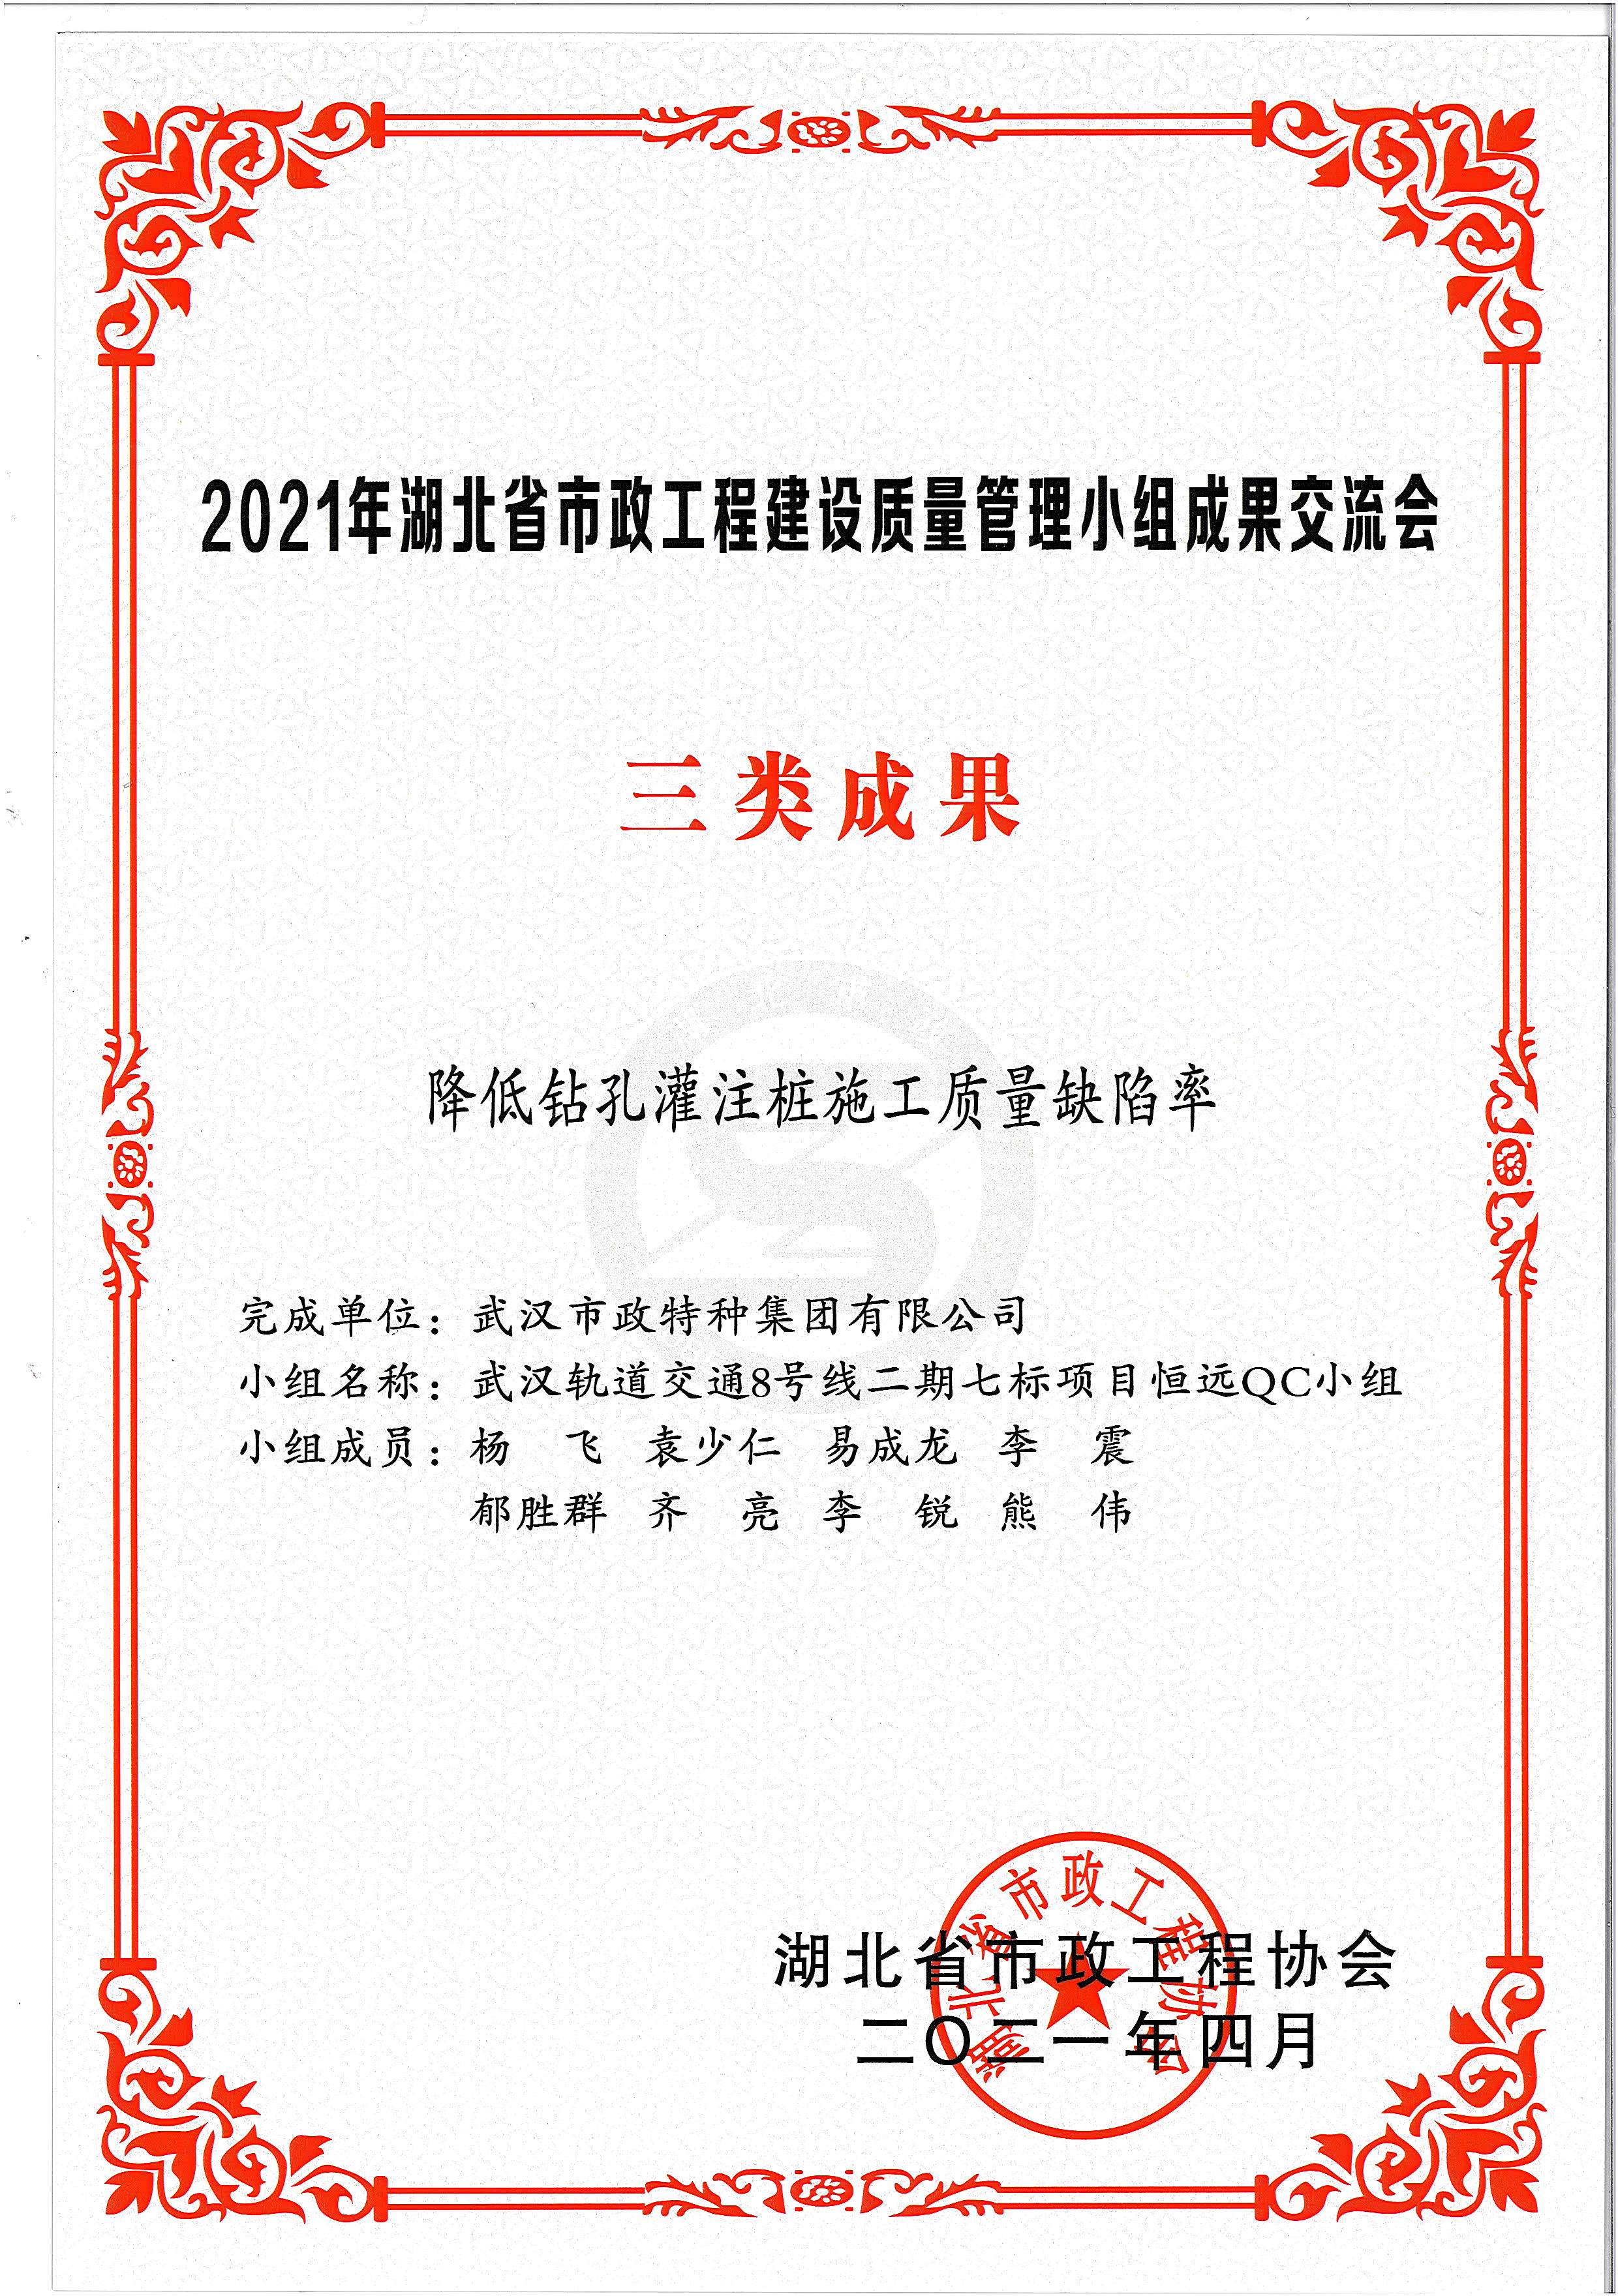 湖北省市政协会QC成果奖——降低钻孔灌注桩施工质量缺陷率